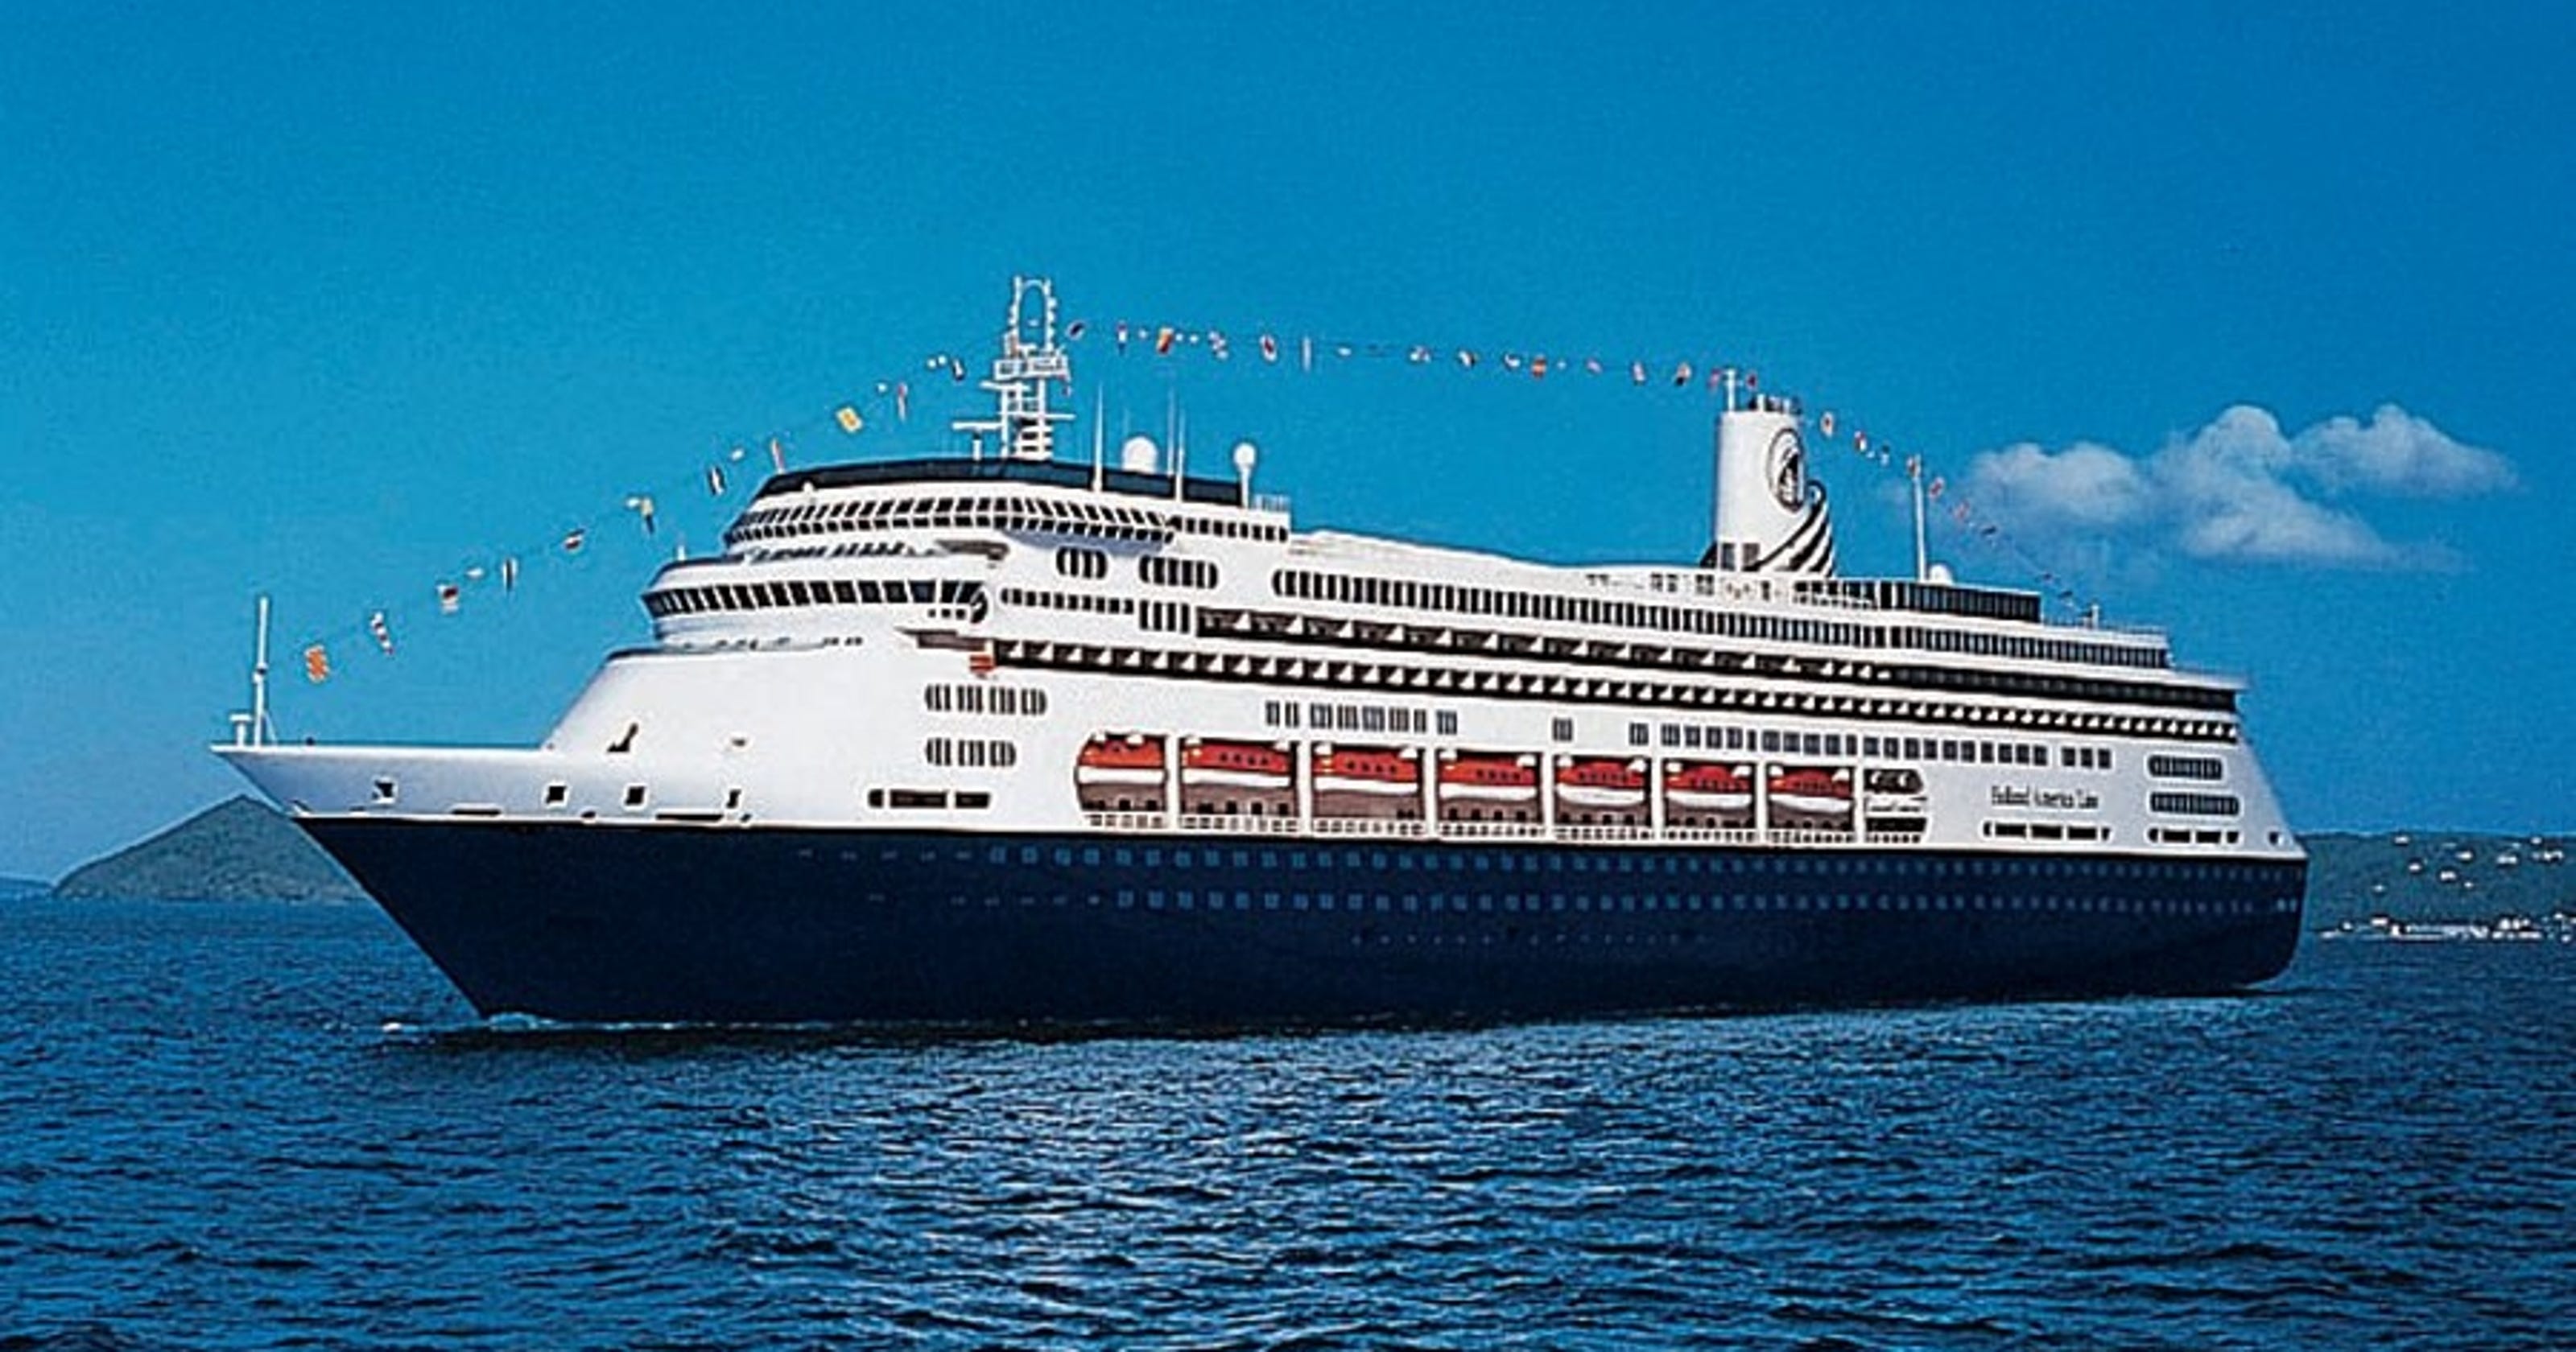 zaandam cruise ship covid